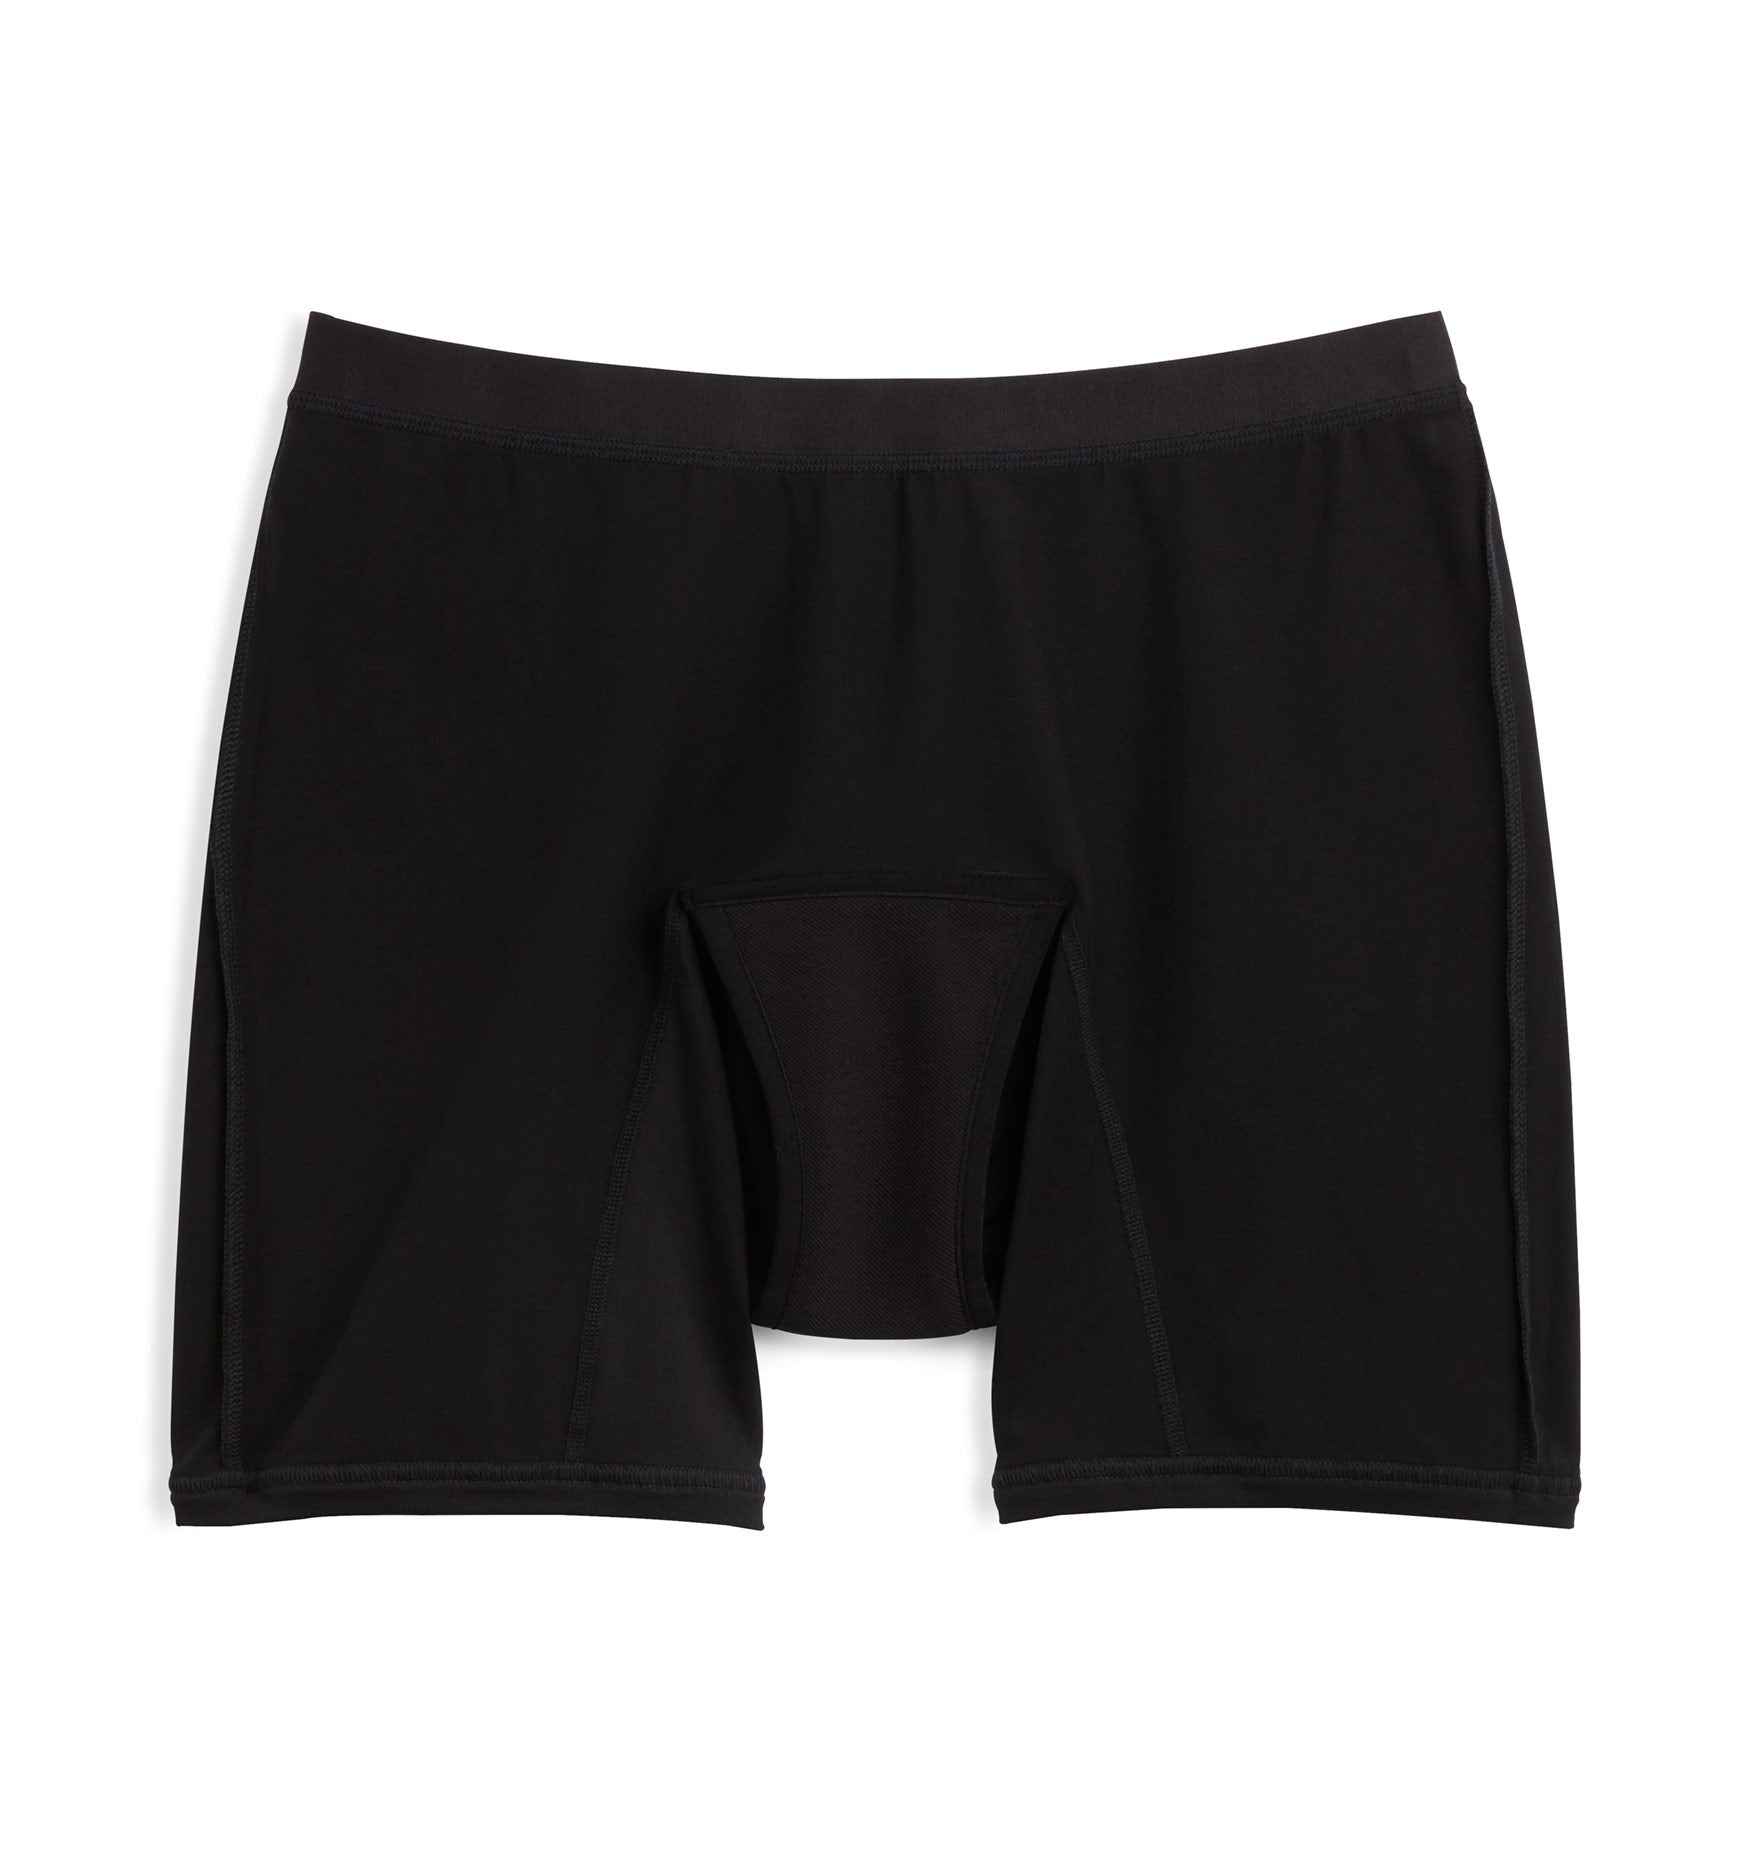 TomboyX 9 Boxer Briefs Underwear For Women, Cotton Stretch